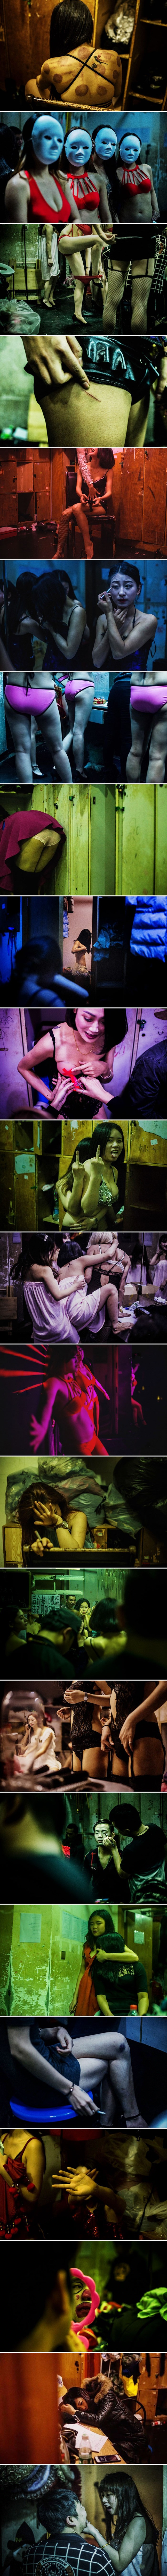 Transvestiti, plesači, djevojke u transu: Zavirite u jedan od noćnih klubova kineskog podzemlja 